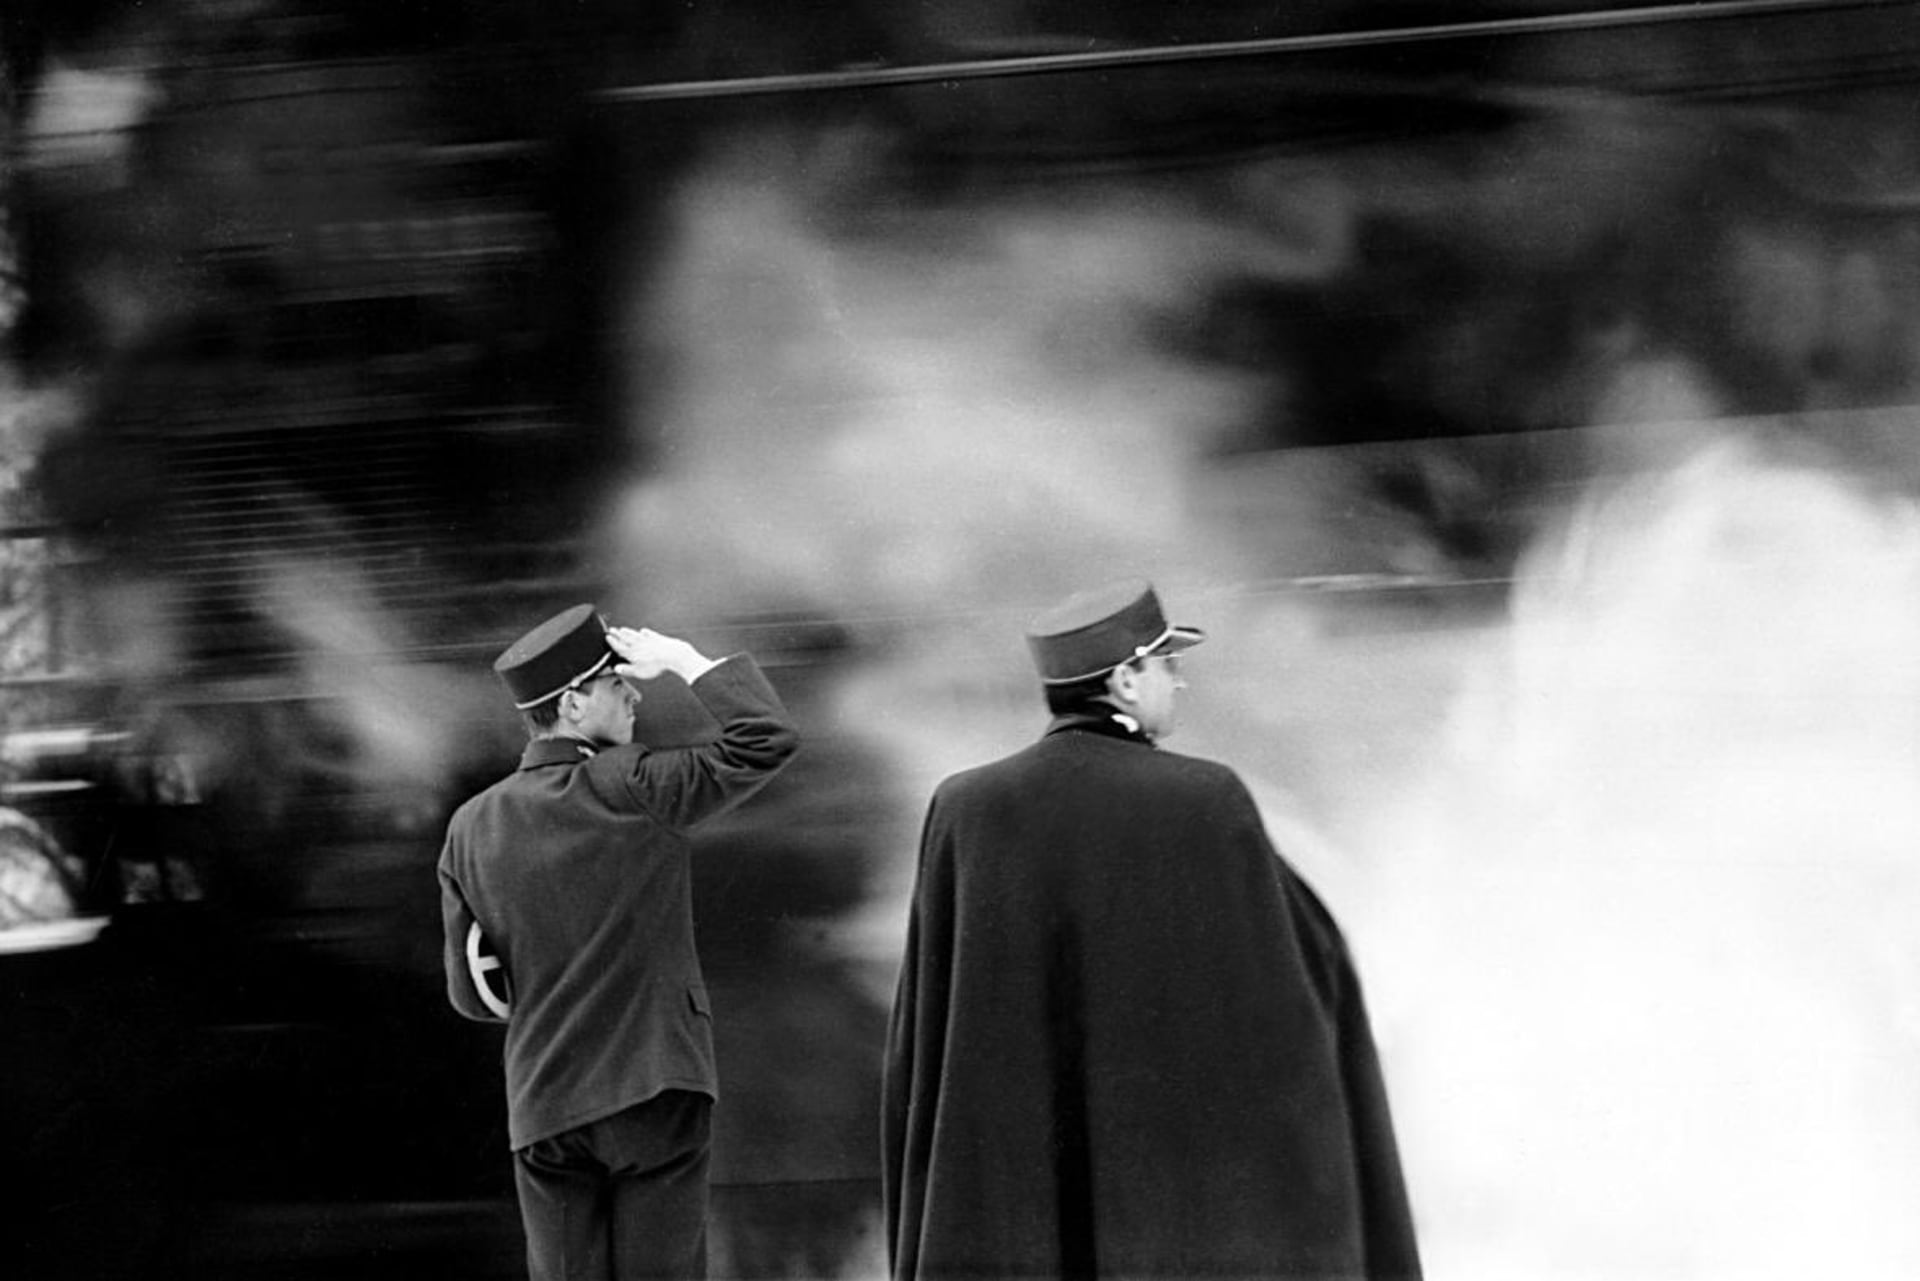 Publikum i odborníky zaujal Menzel hned svou první režií, kterou byla adaptace Hrabalovy povídky Smrt pana Baltazara ve filmu Perličky na dně (1965)